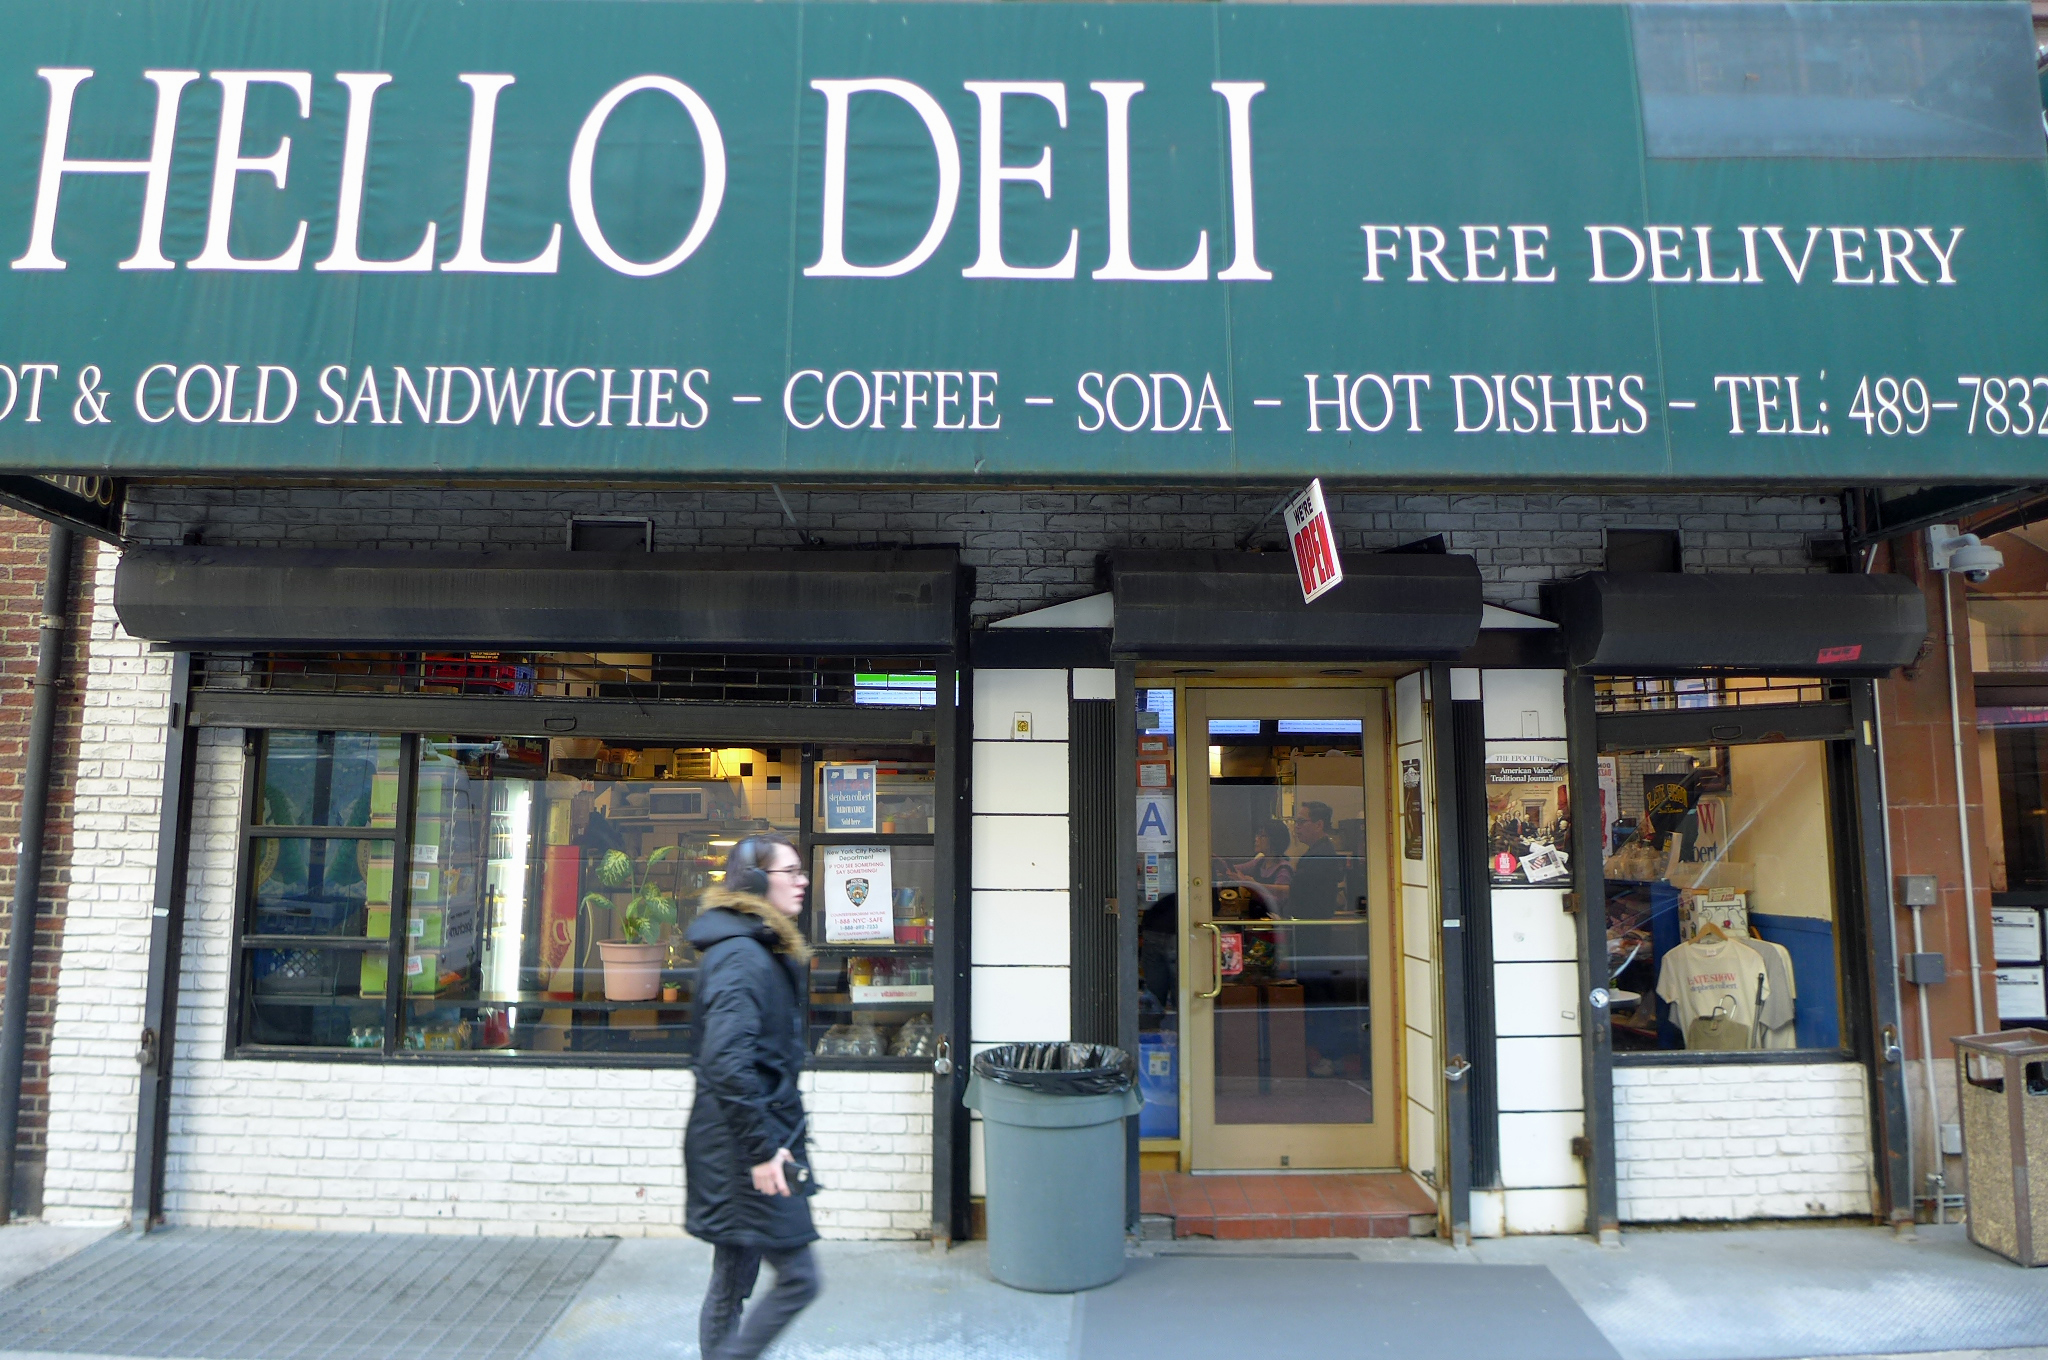 The Hello Deli says “Hello!”